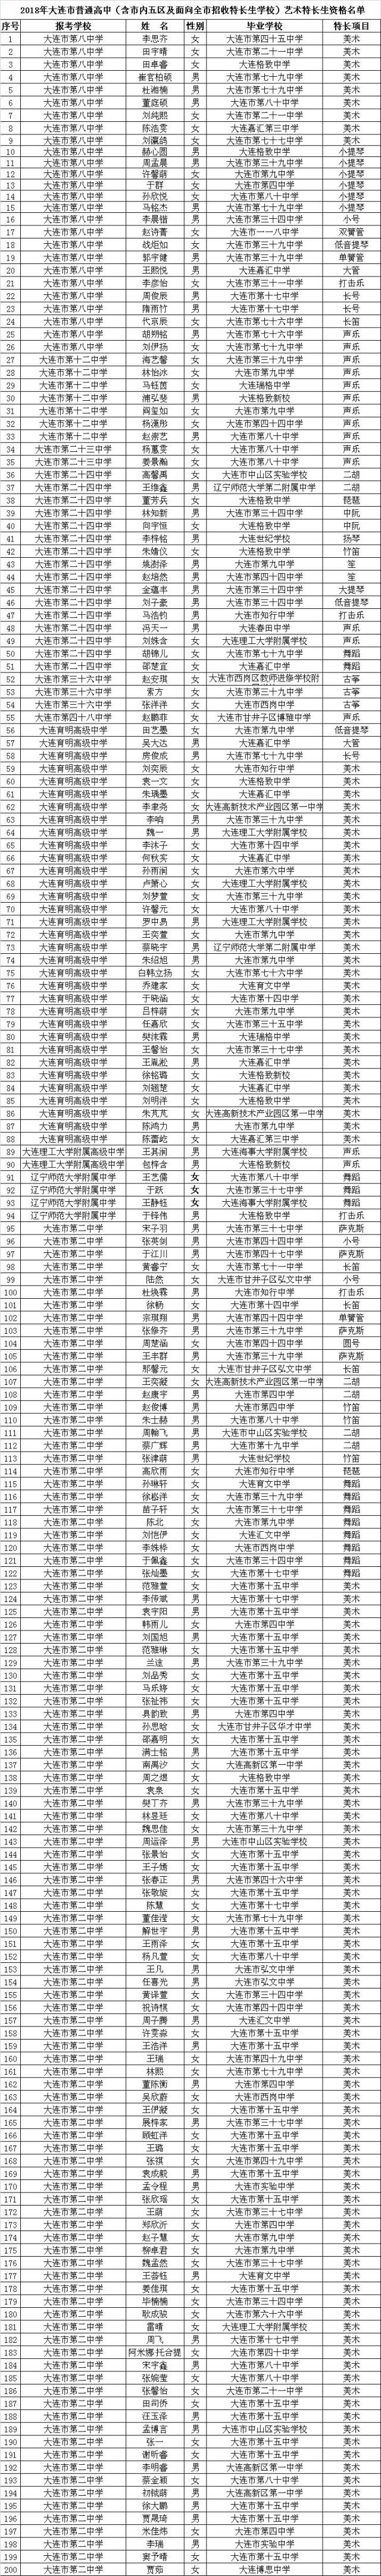 2018年大连中考特长生资格名单公示(最终版)